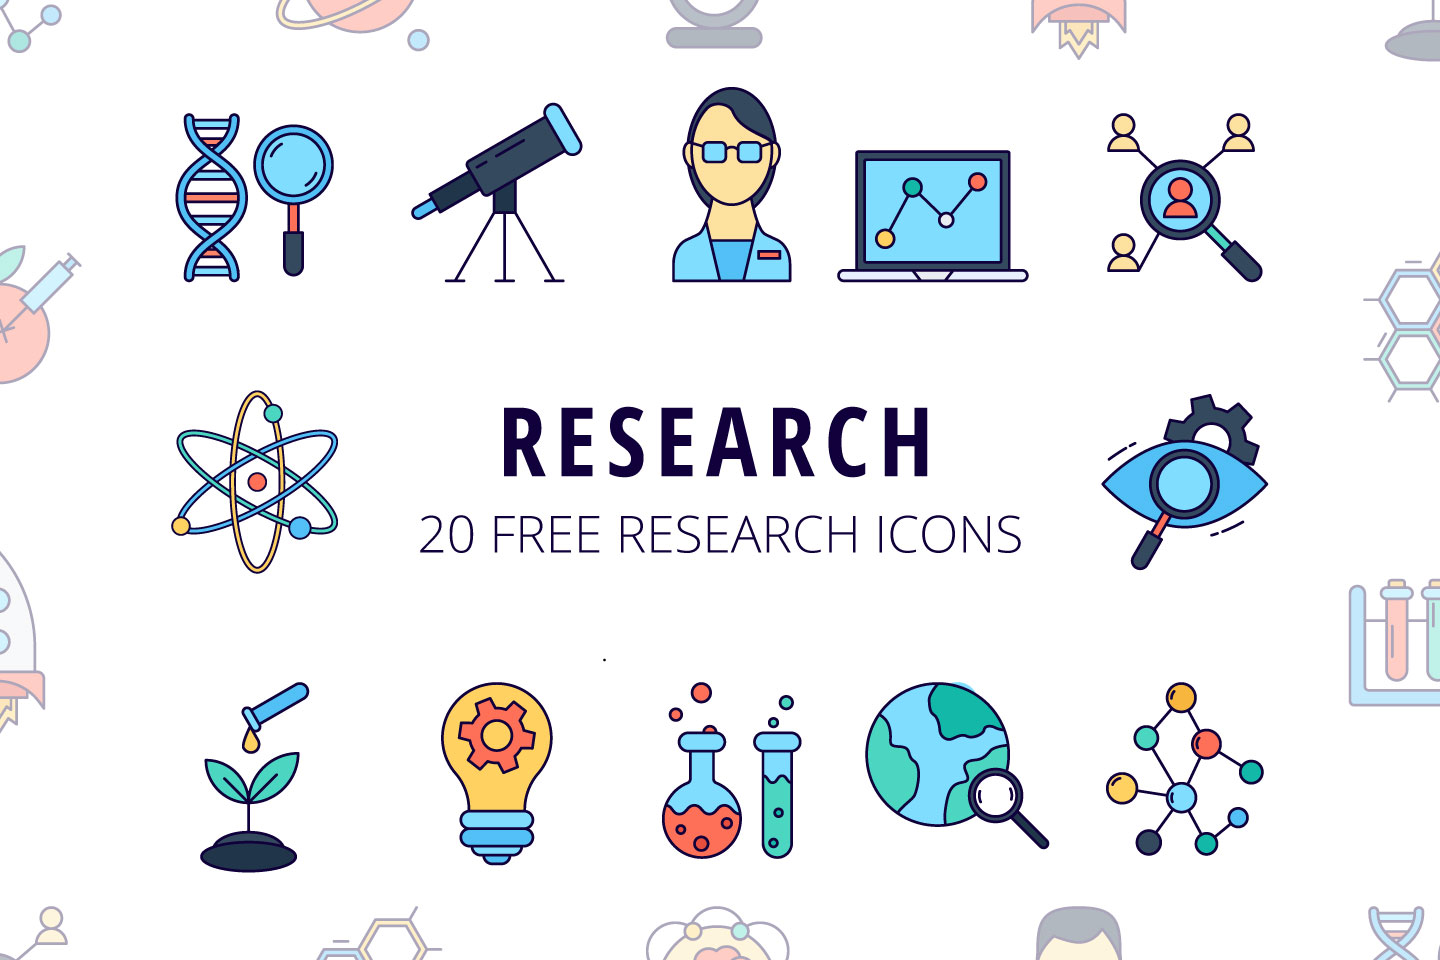 research presentation icon